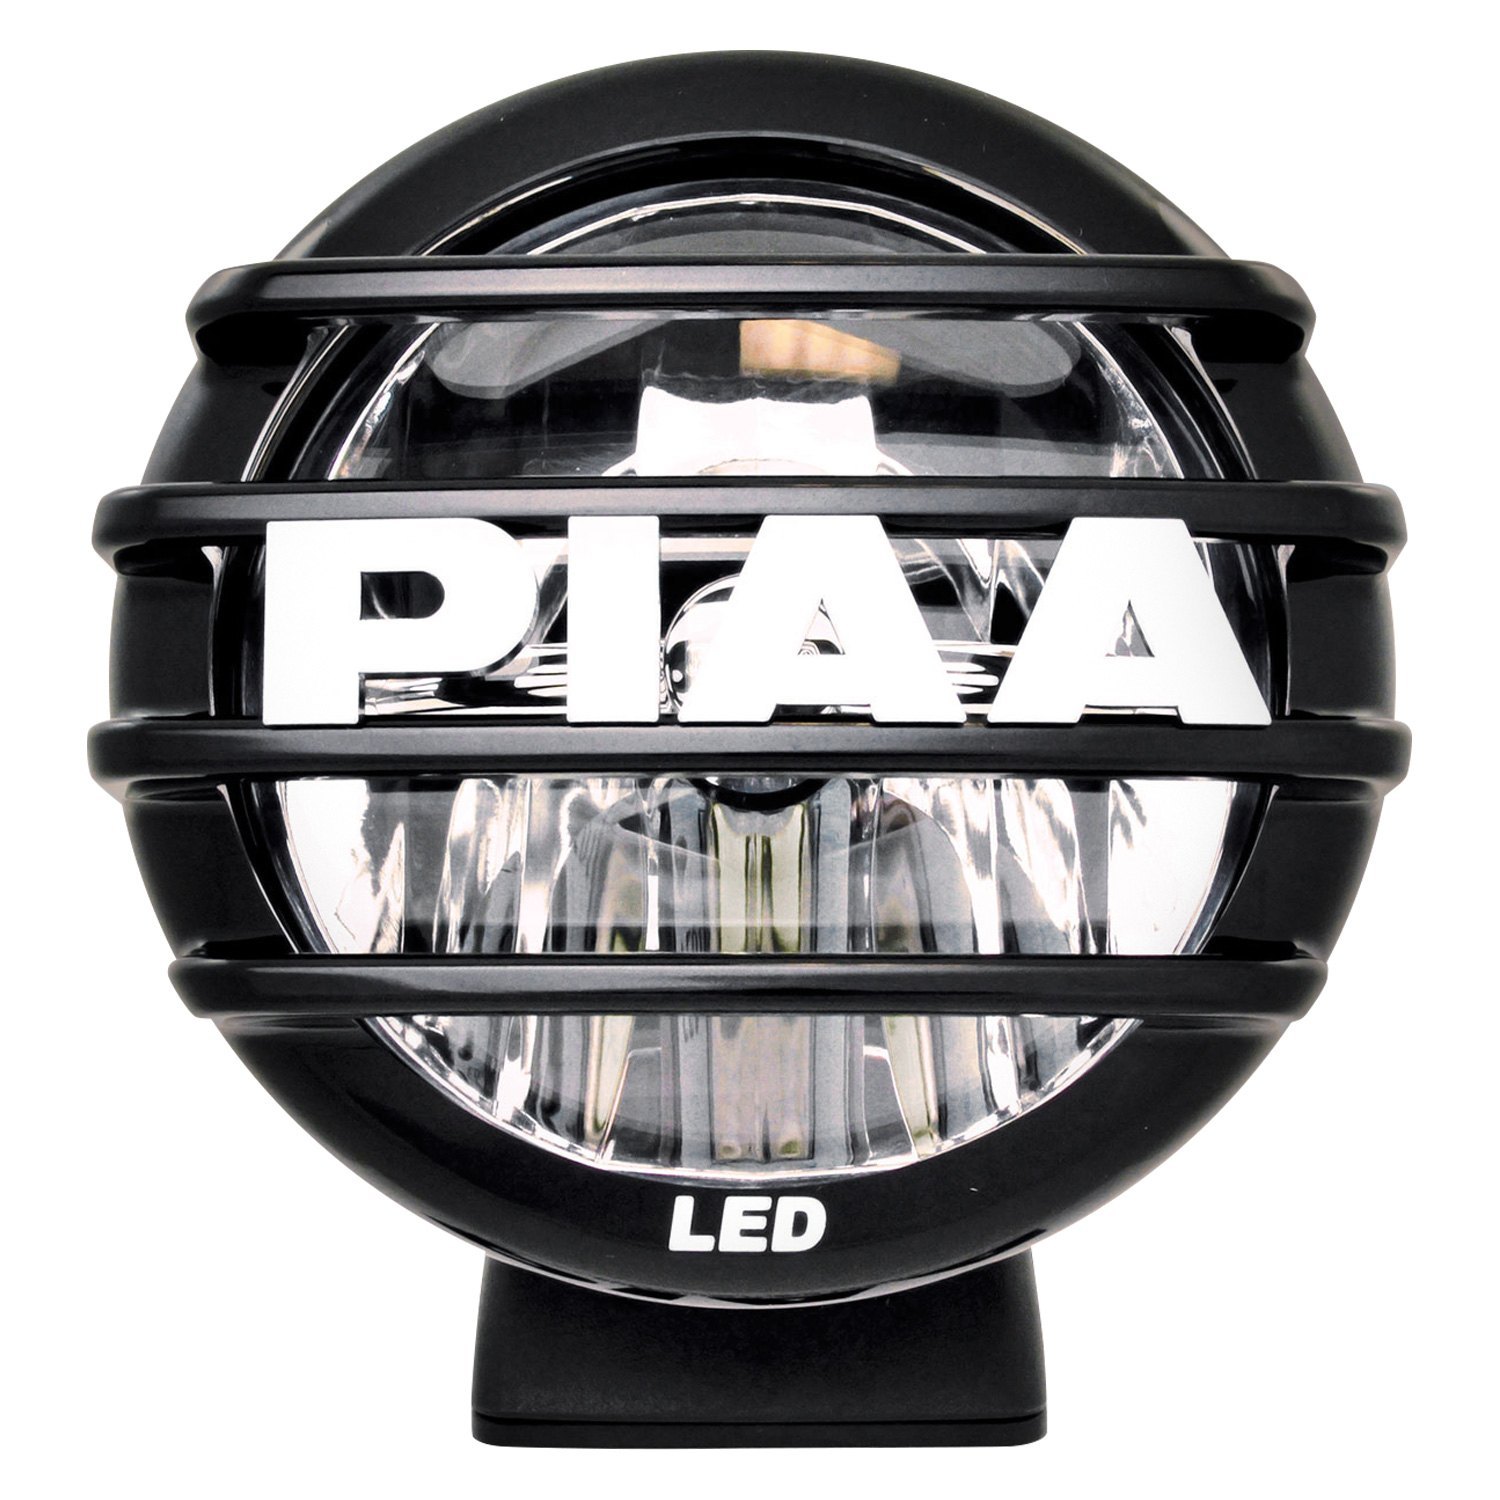 PIAA Fog Lights. Противотуманные фары PIAA. Фары PIAA Land Rover. Фары PIAA.